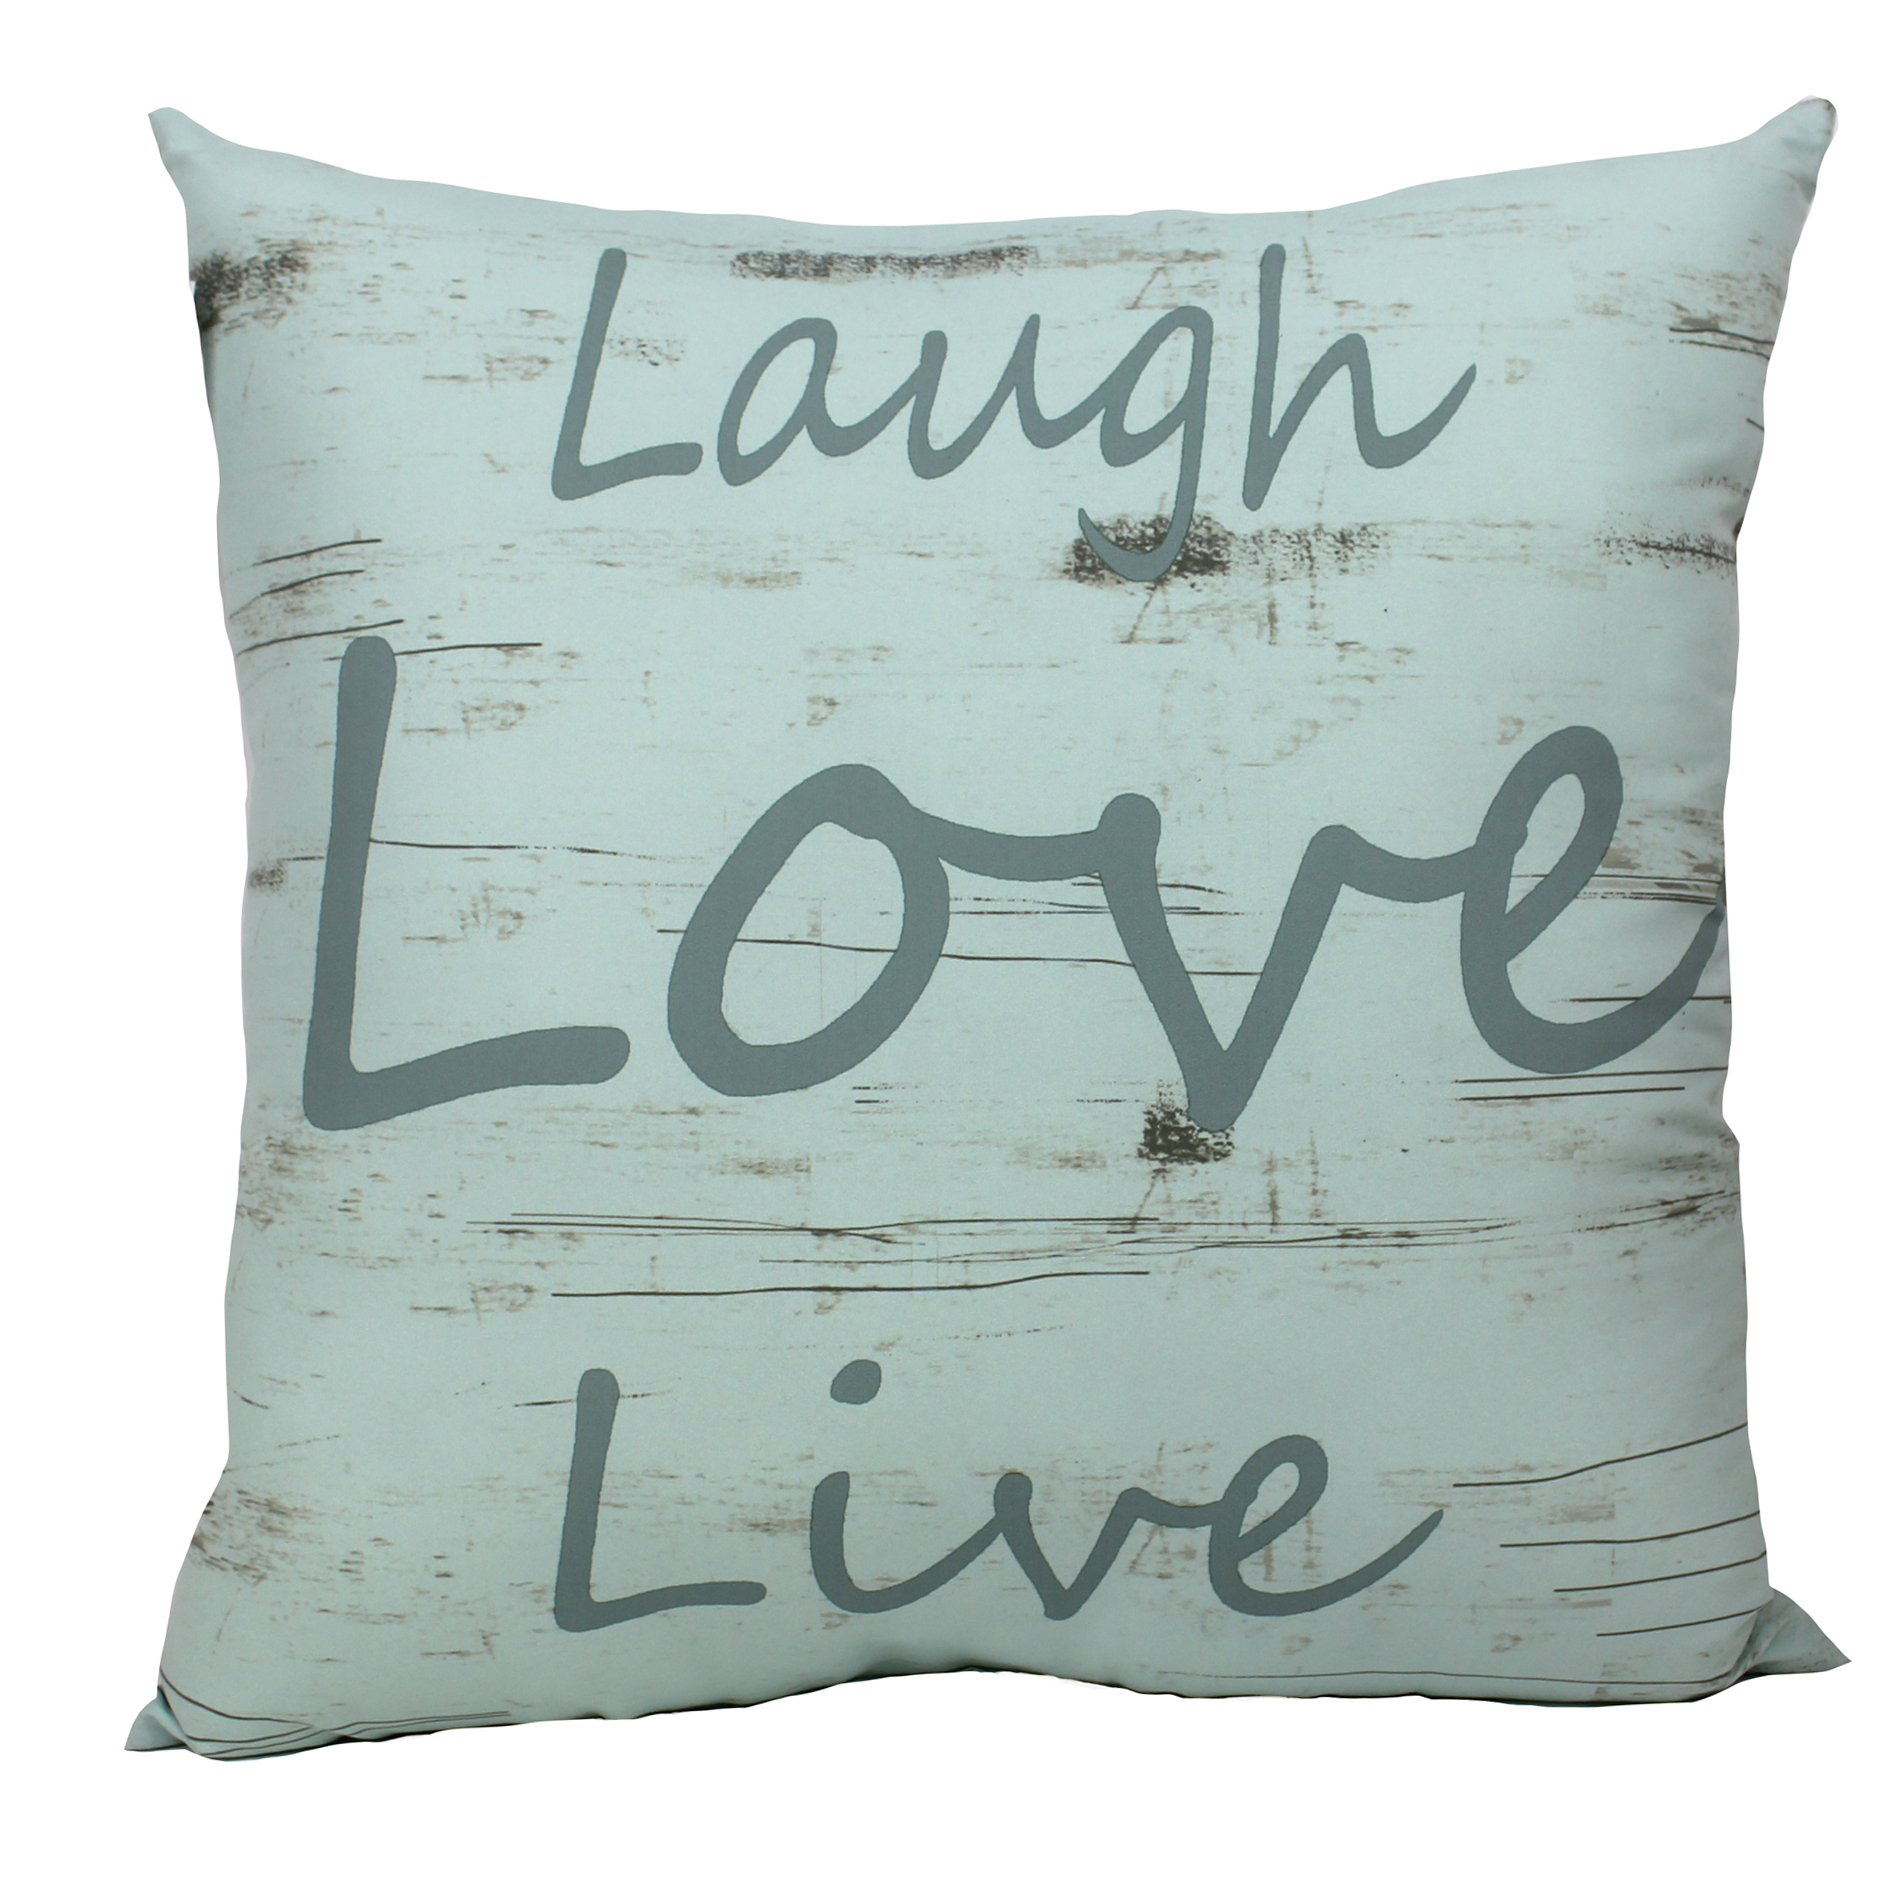 -Laugh Love Live Pillow